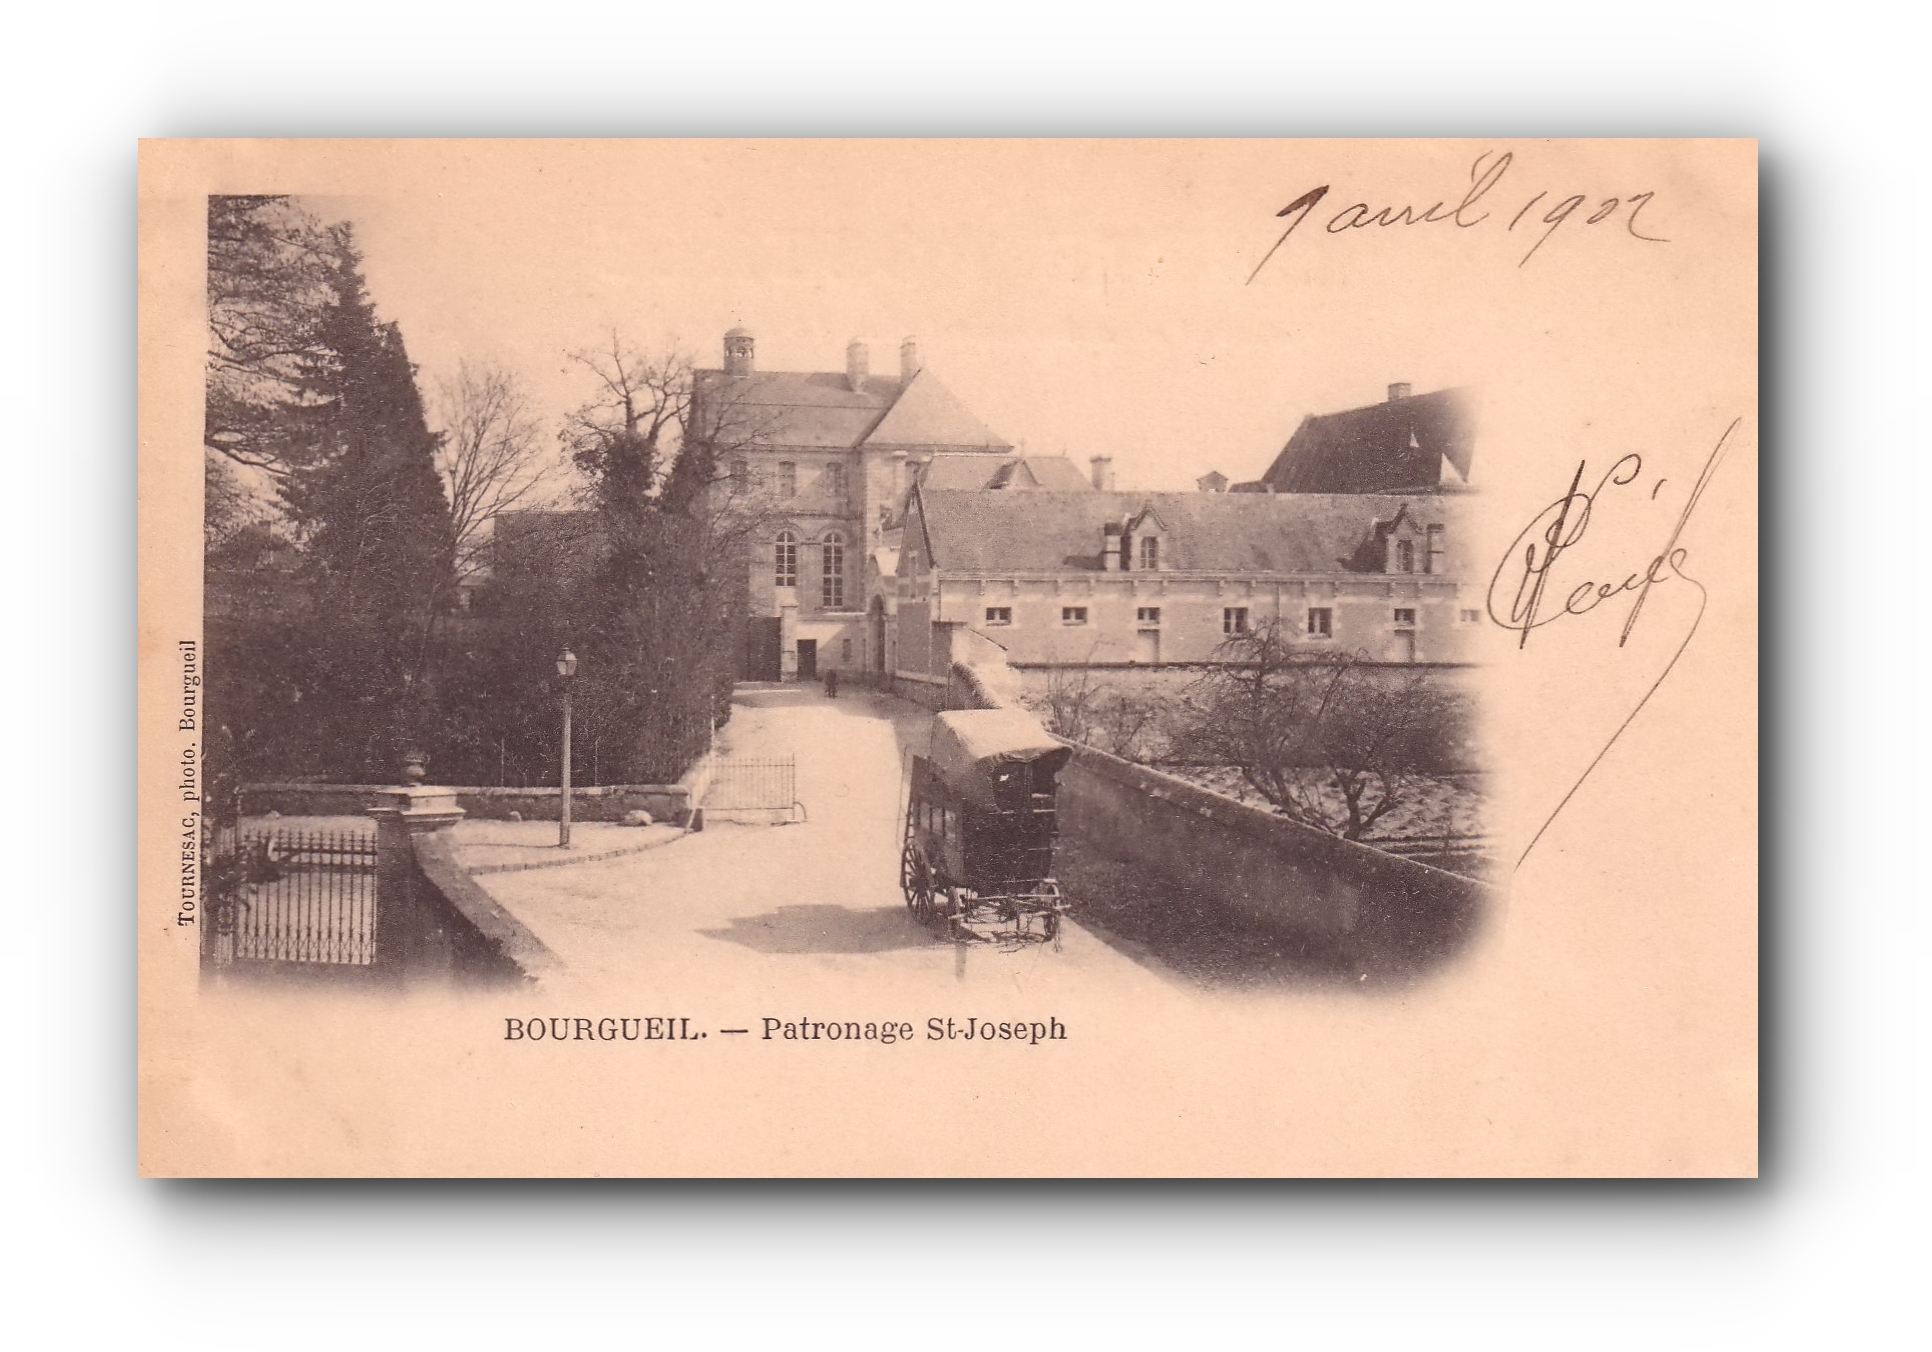 - Patronage St - Joseph - BOURGUEIL - 01.04.1902 -